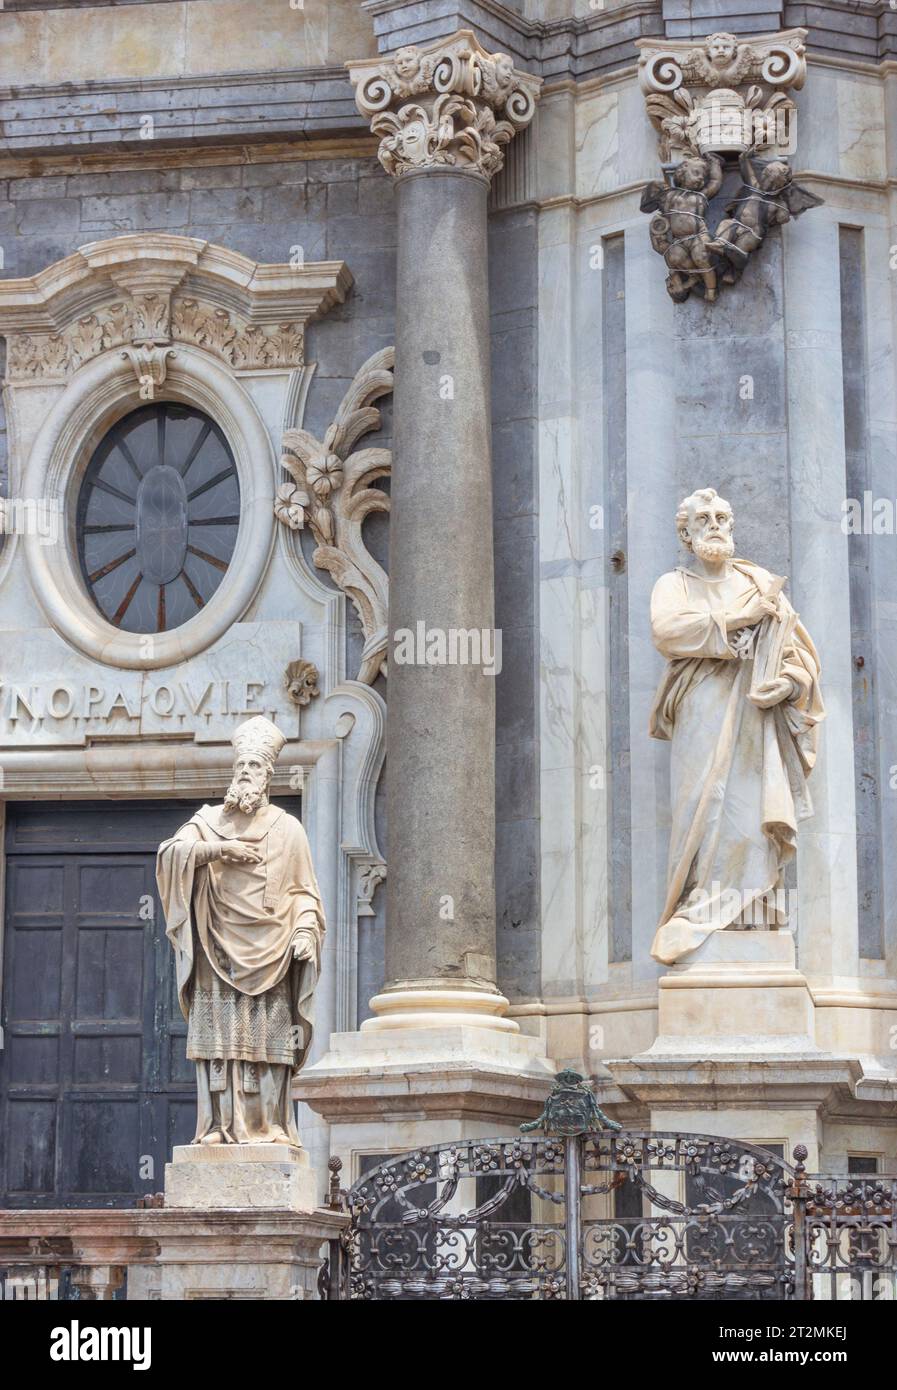 Cattedrale metropolitana di Sant'Agata, Catania, Sicilia, Italia. Statue sulla facciata. Catania è un sito patrimonio dell'umanità dell'UNESCO. Foto Stock